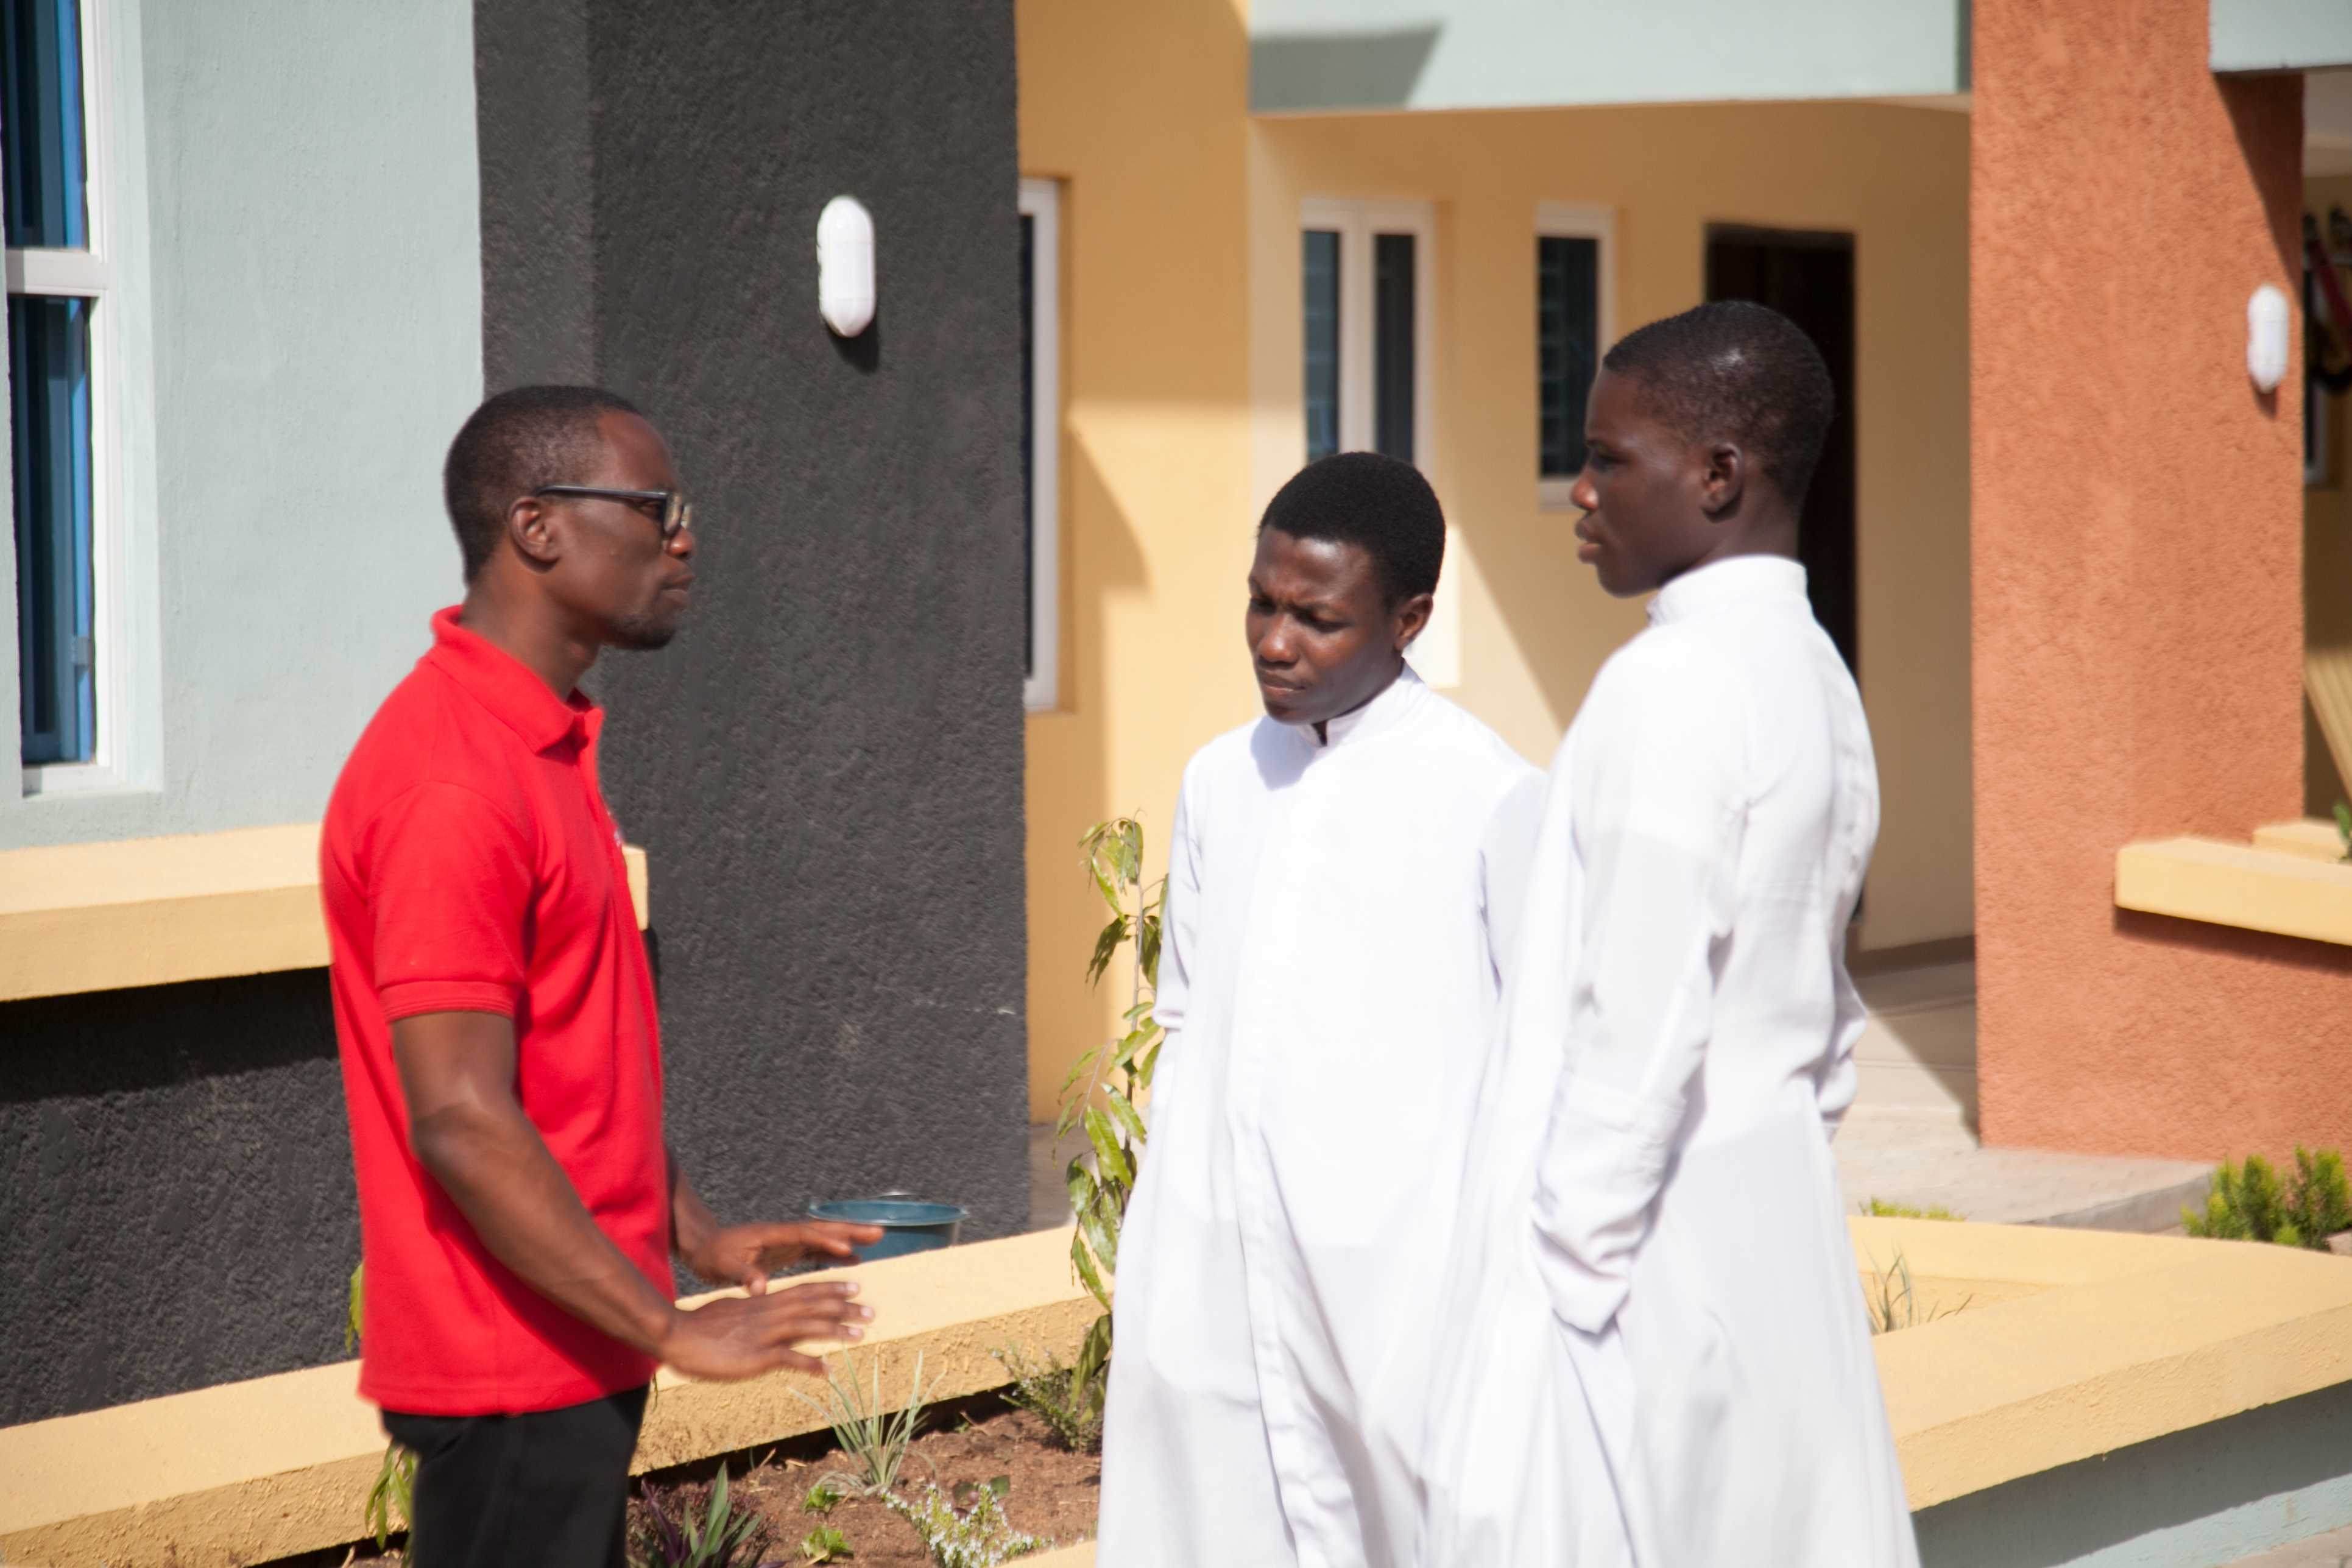 “La sangre de nuestro hermano nos liberó”. Dos seminaristas nigerianos recuerdan su cautiverio a manos de secuestradores   